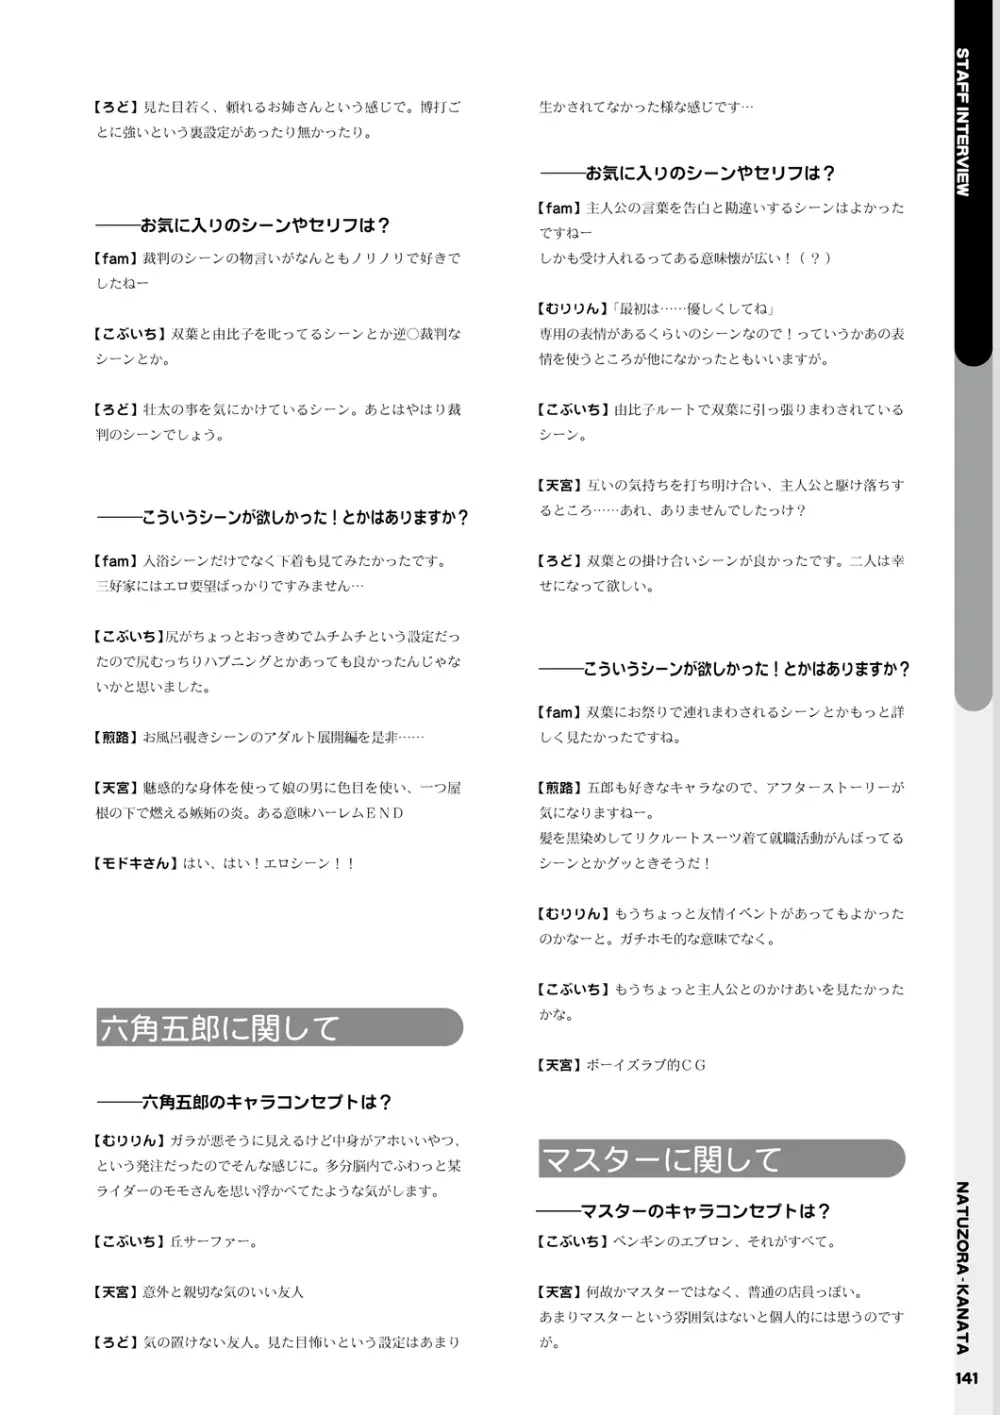 夏空カナタ オフィシャル・ビジュアルファンブック 143ページ